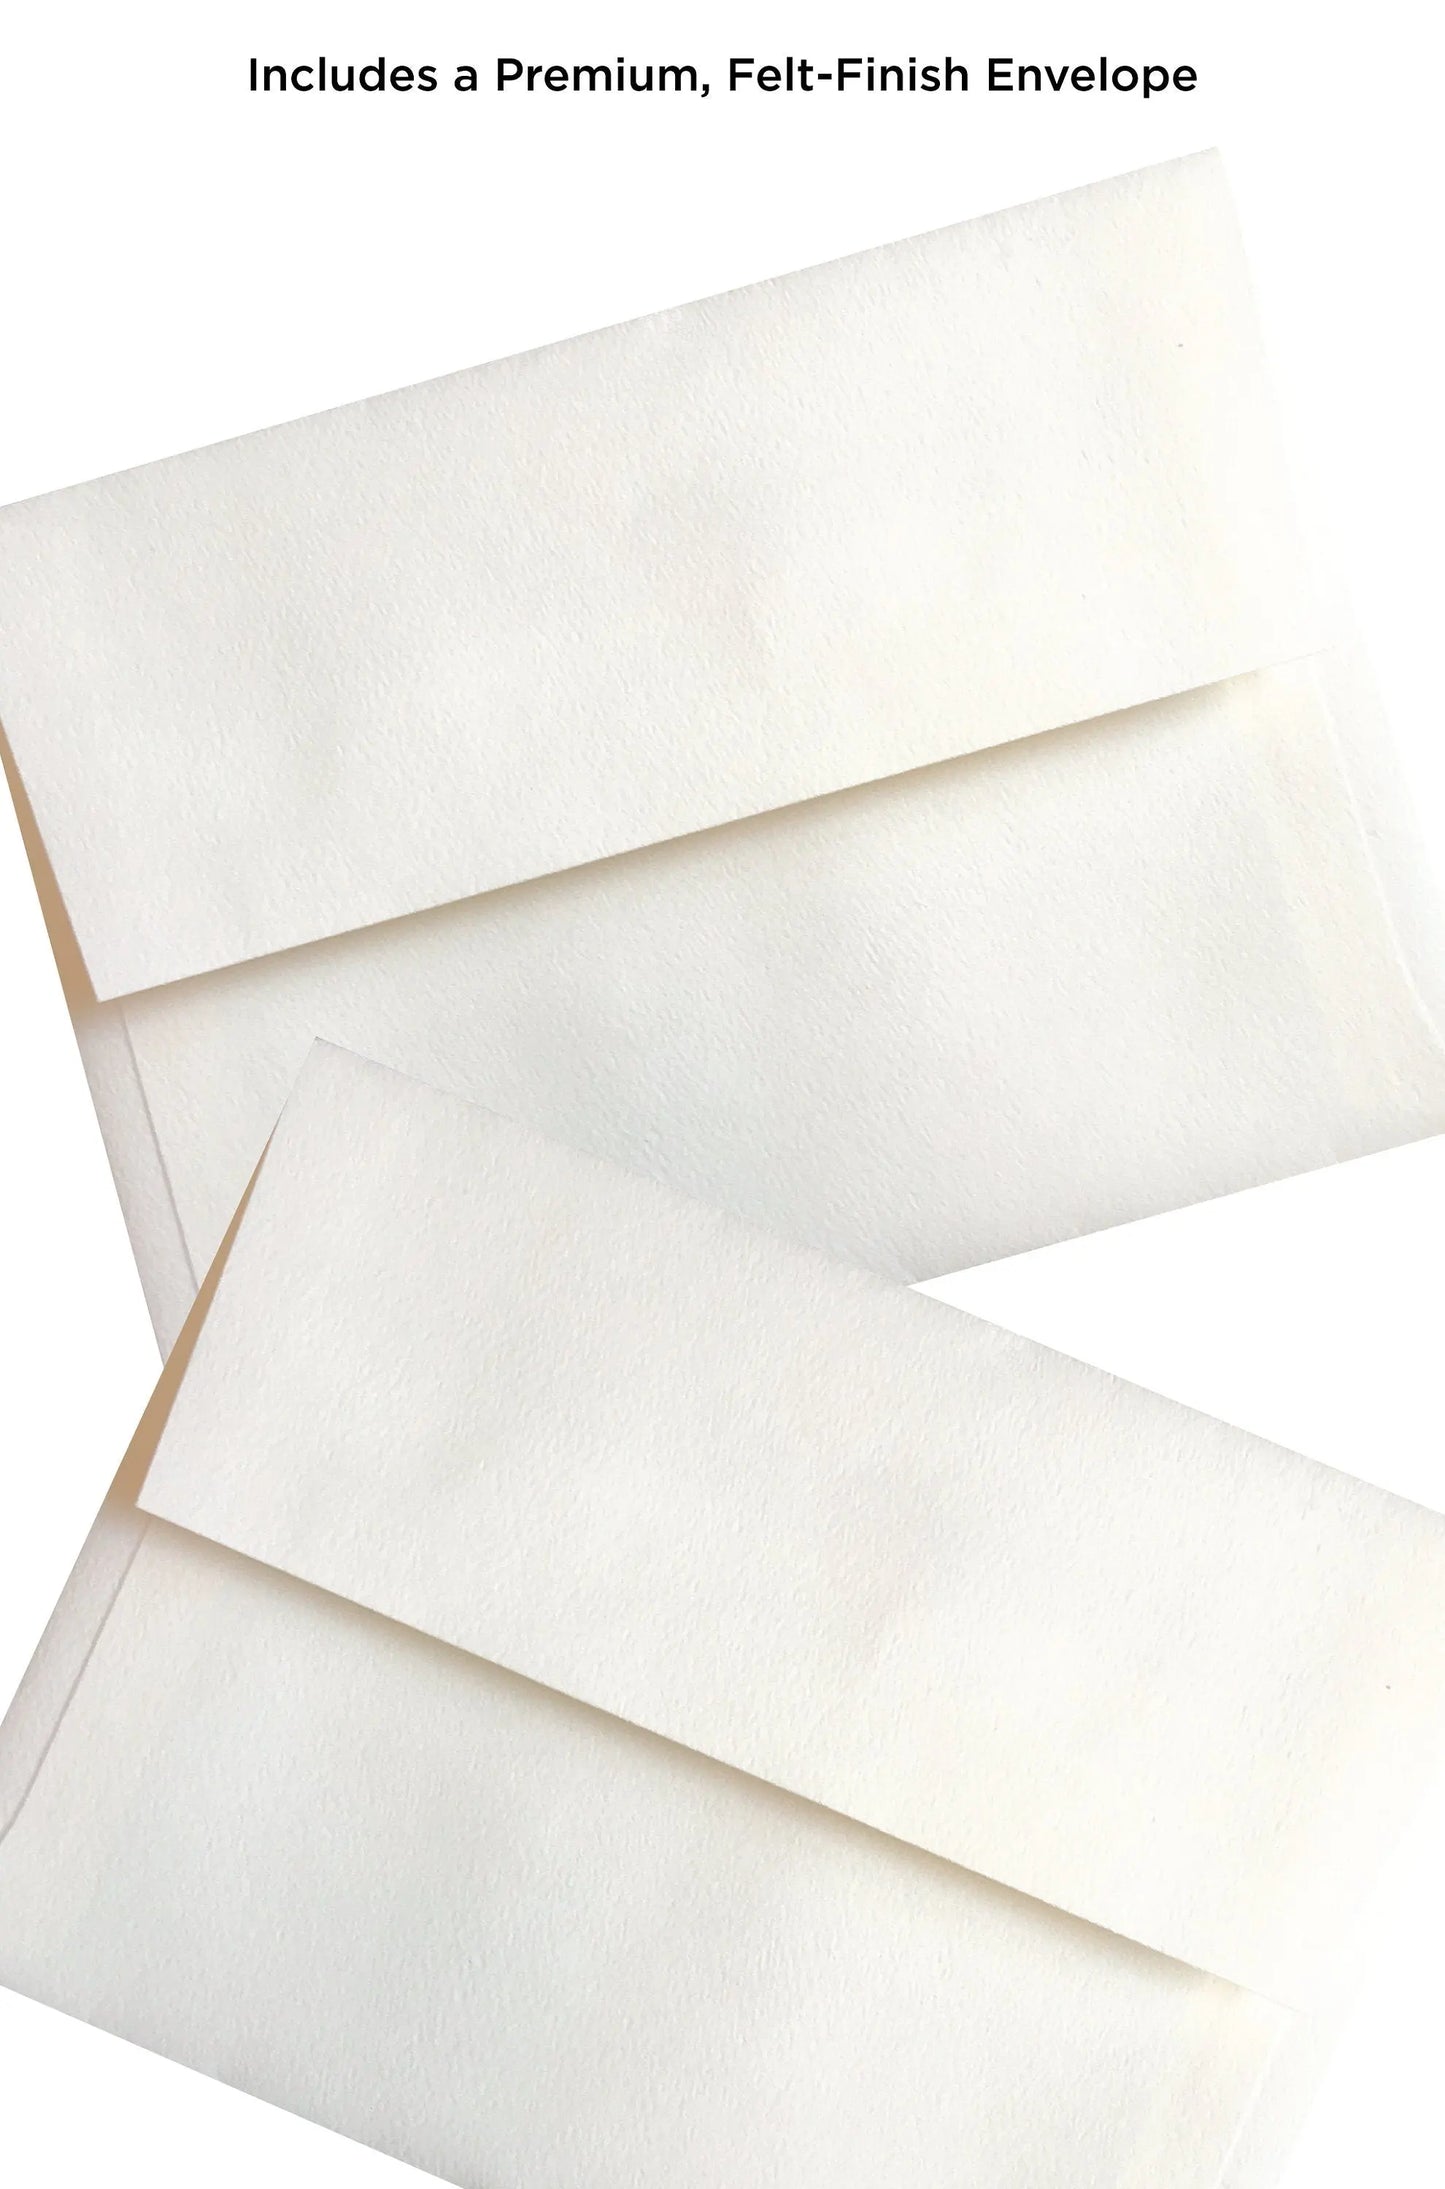 two white envelopes